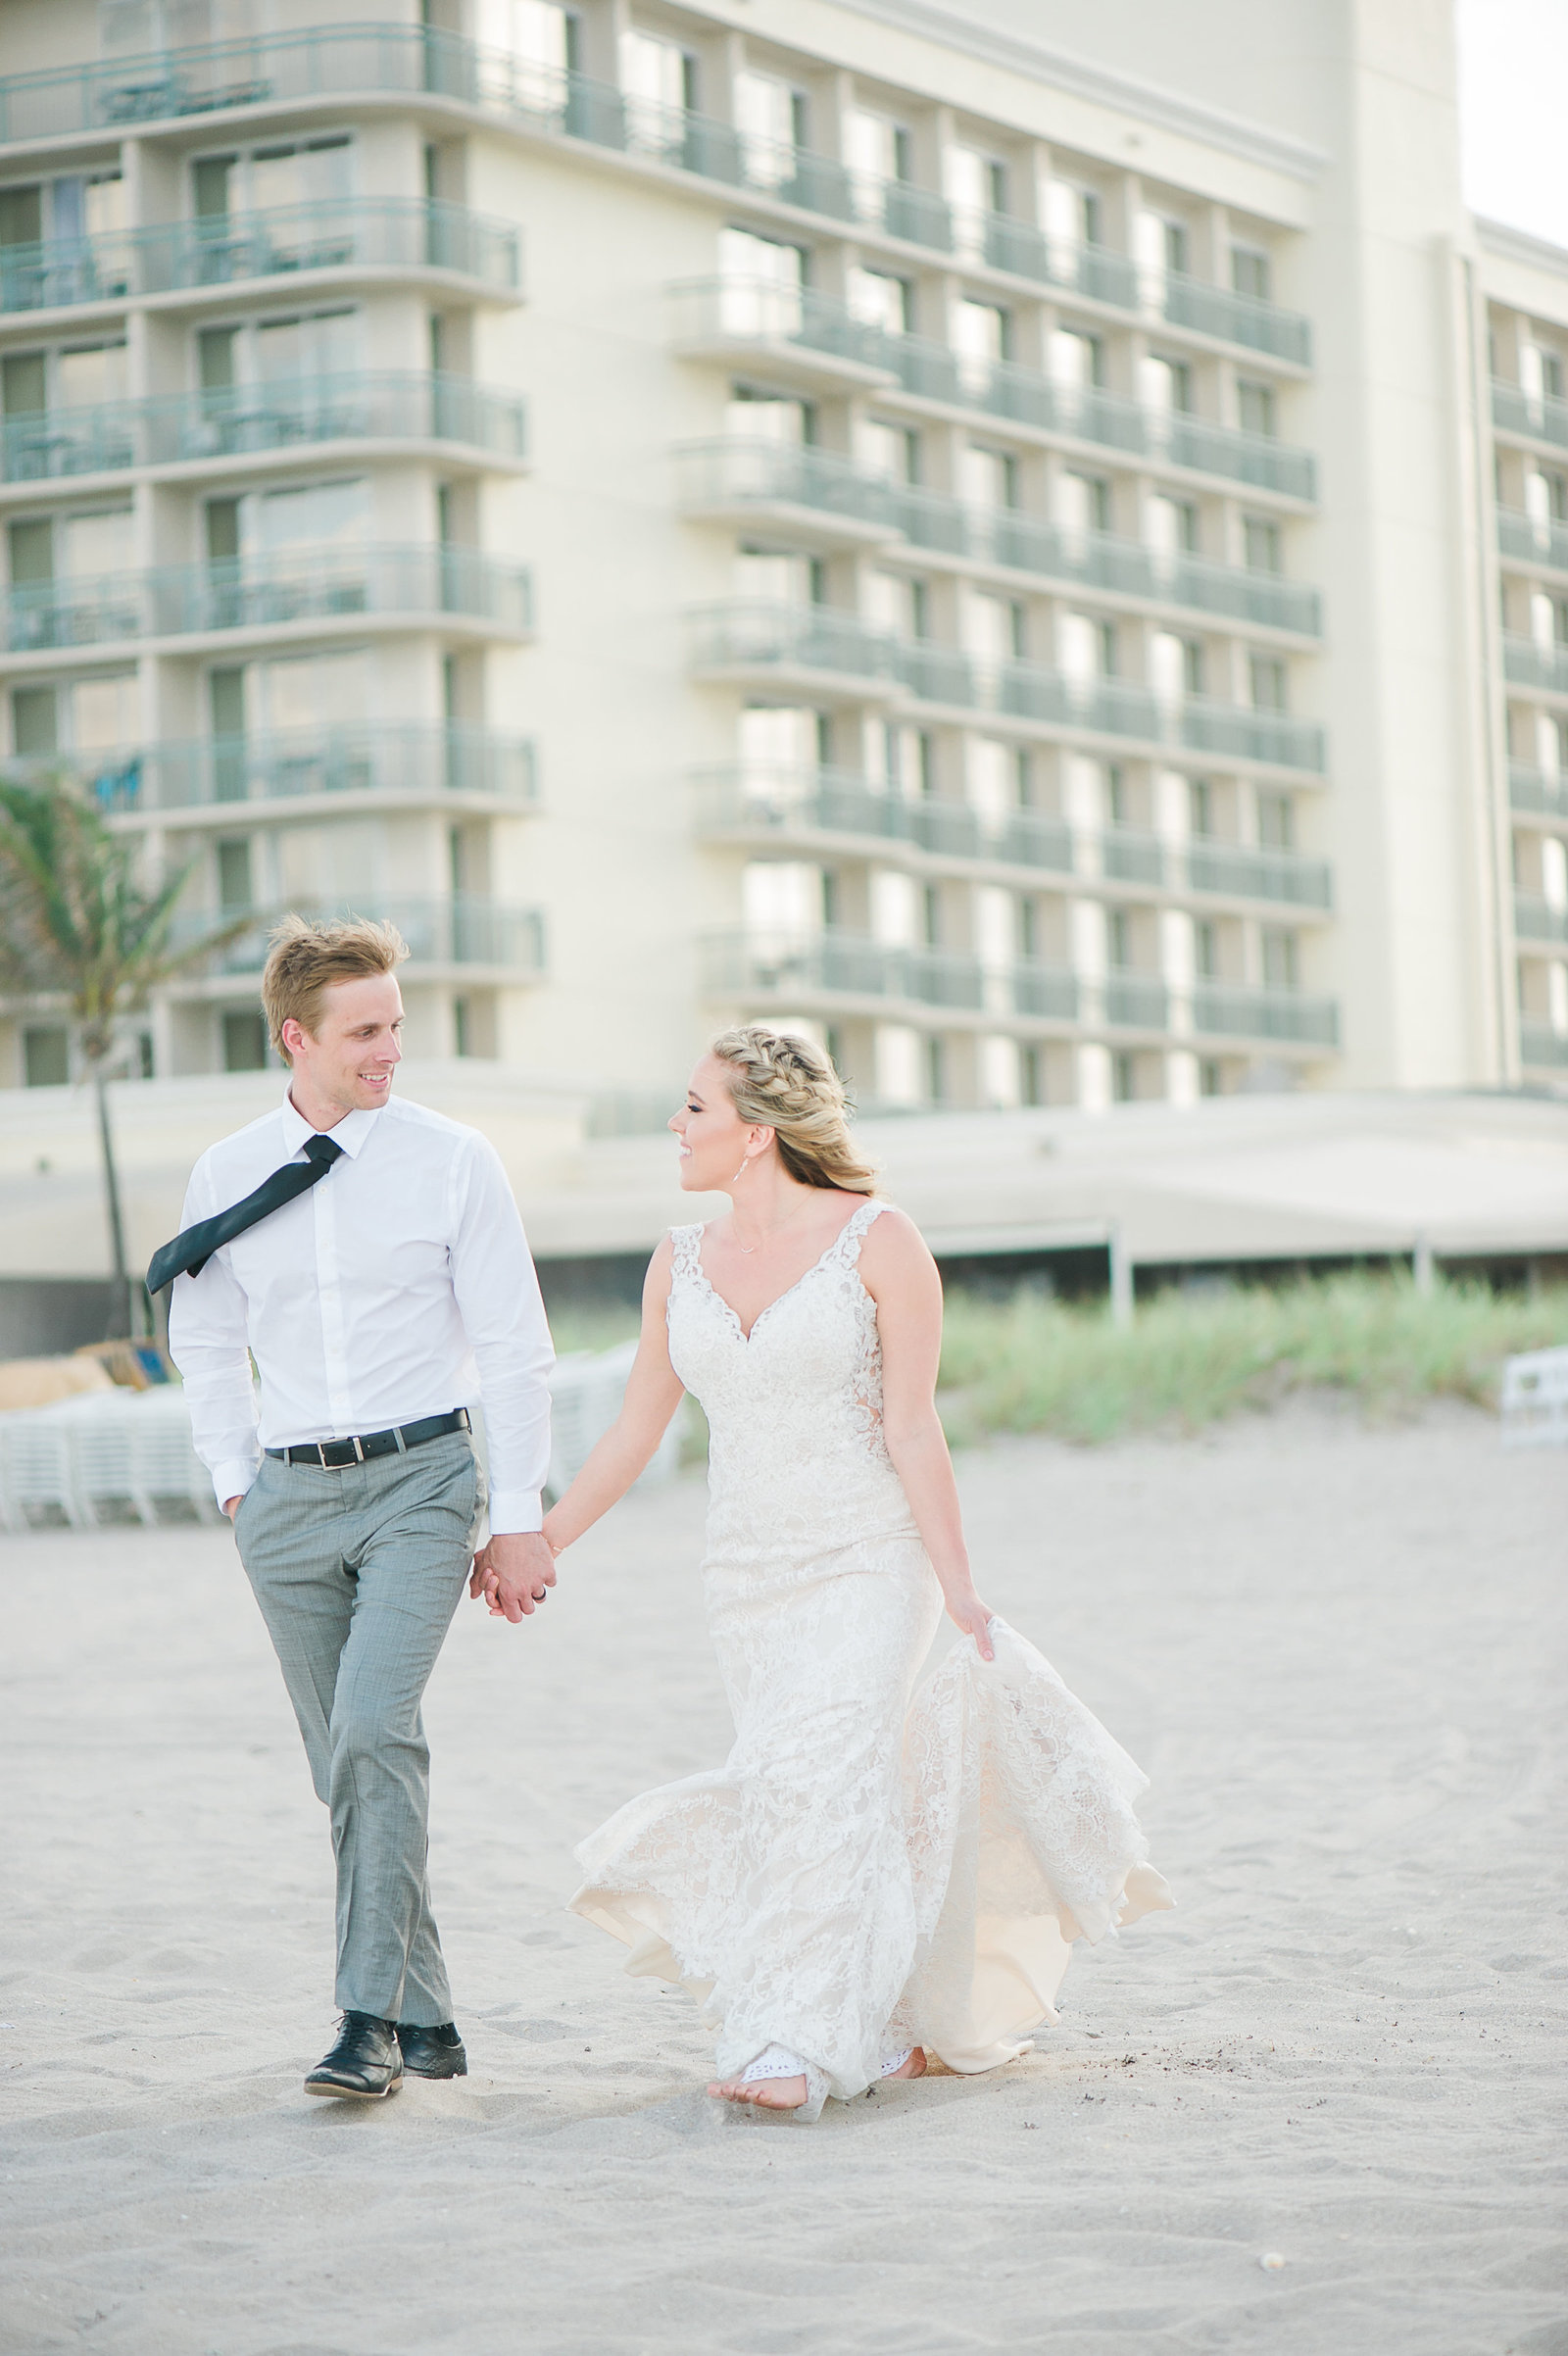 Beachy Wedding - Hilton Singer Island Wedding - Palm Beach Wedding Photography by Palm Beach Photography, Inc.